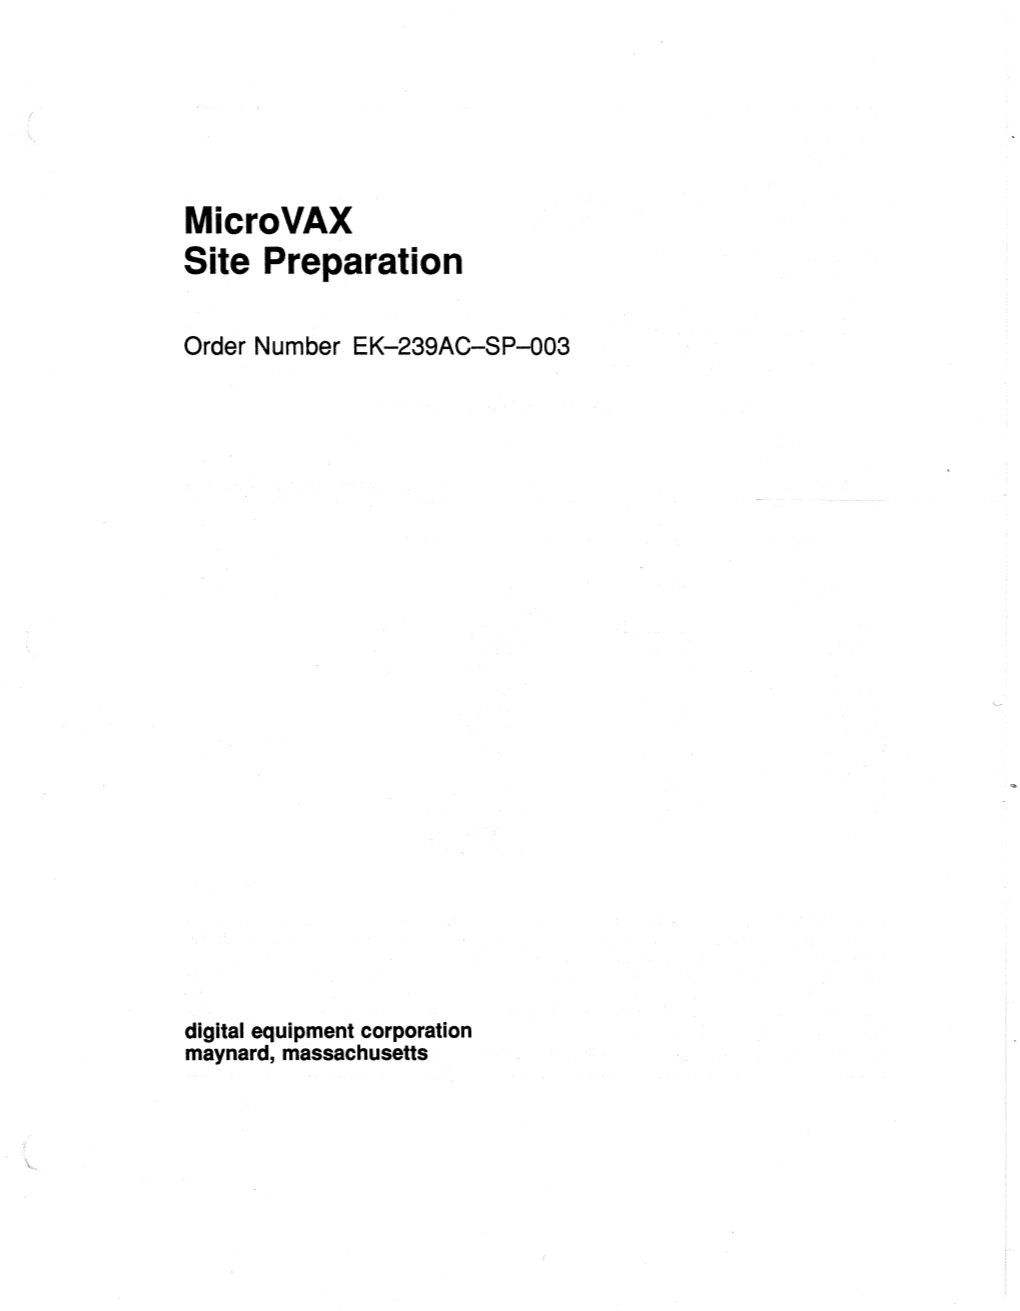 Microvax Site Preparation